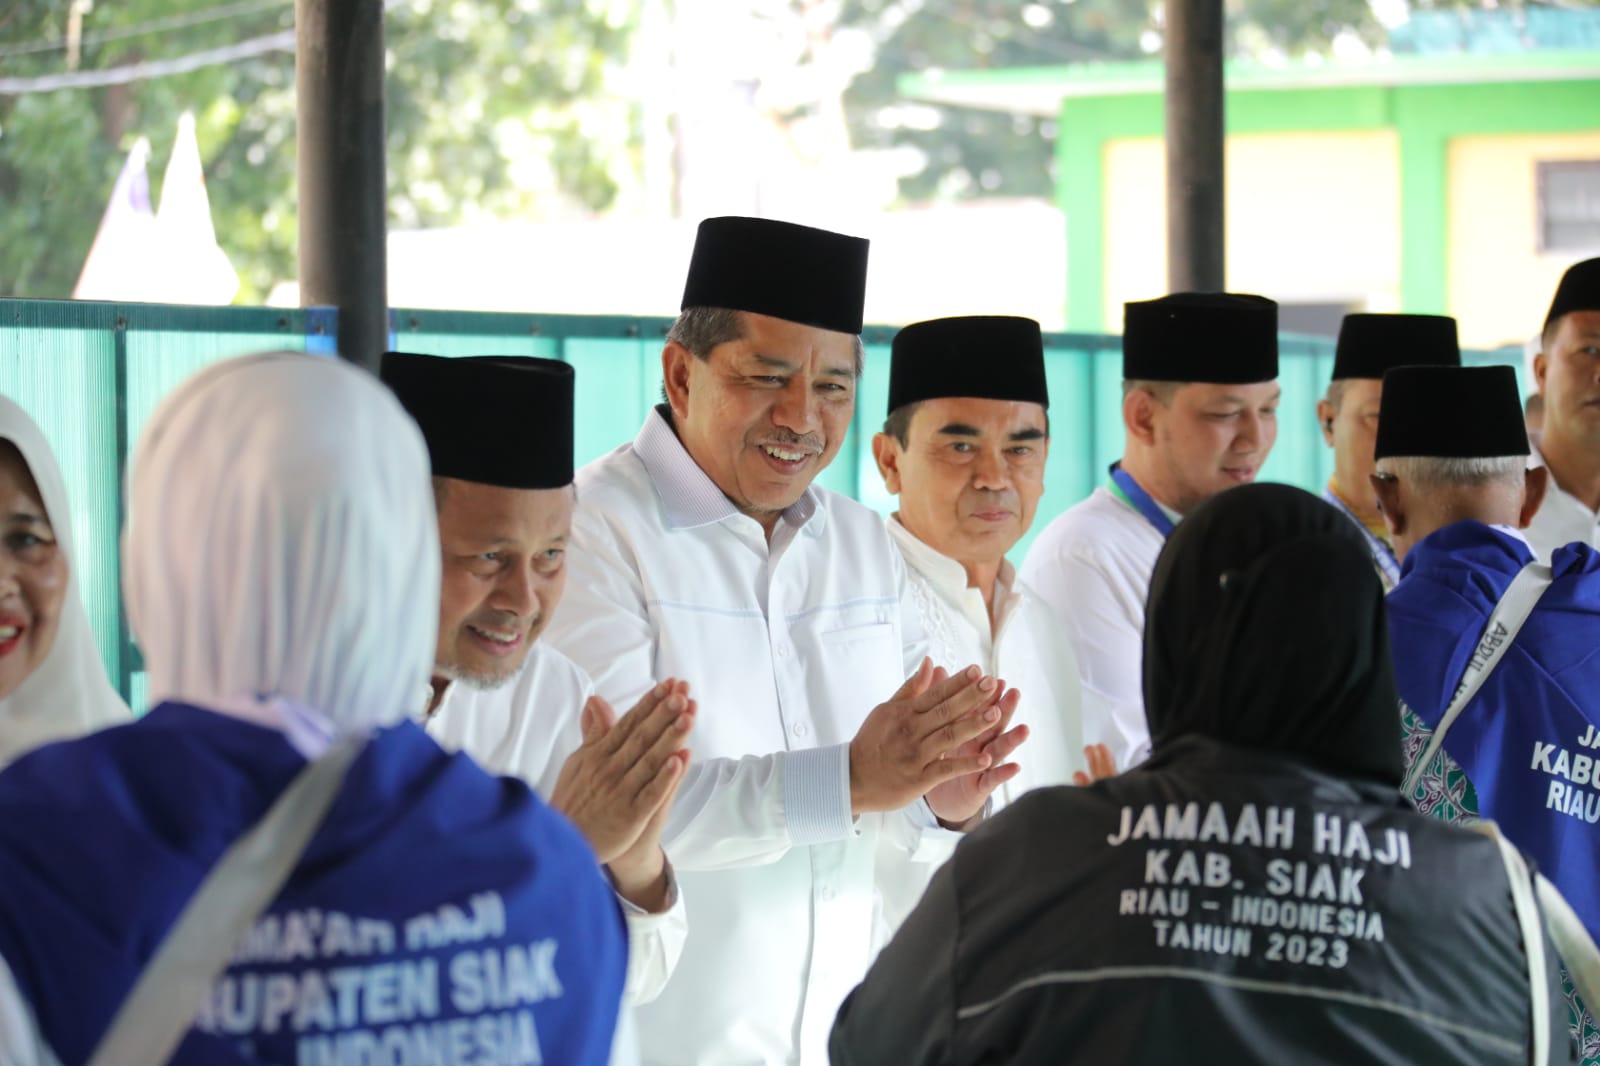 Jemaah Calon Haji kabupaten Siak Bertolak ke Madinah 